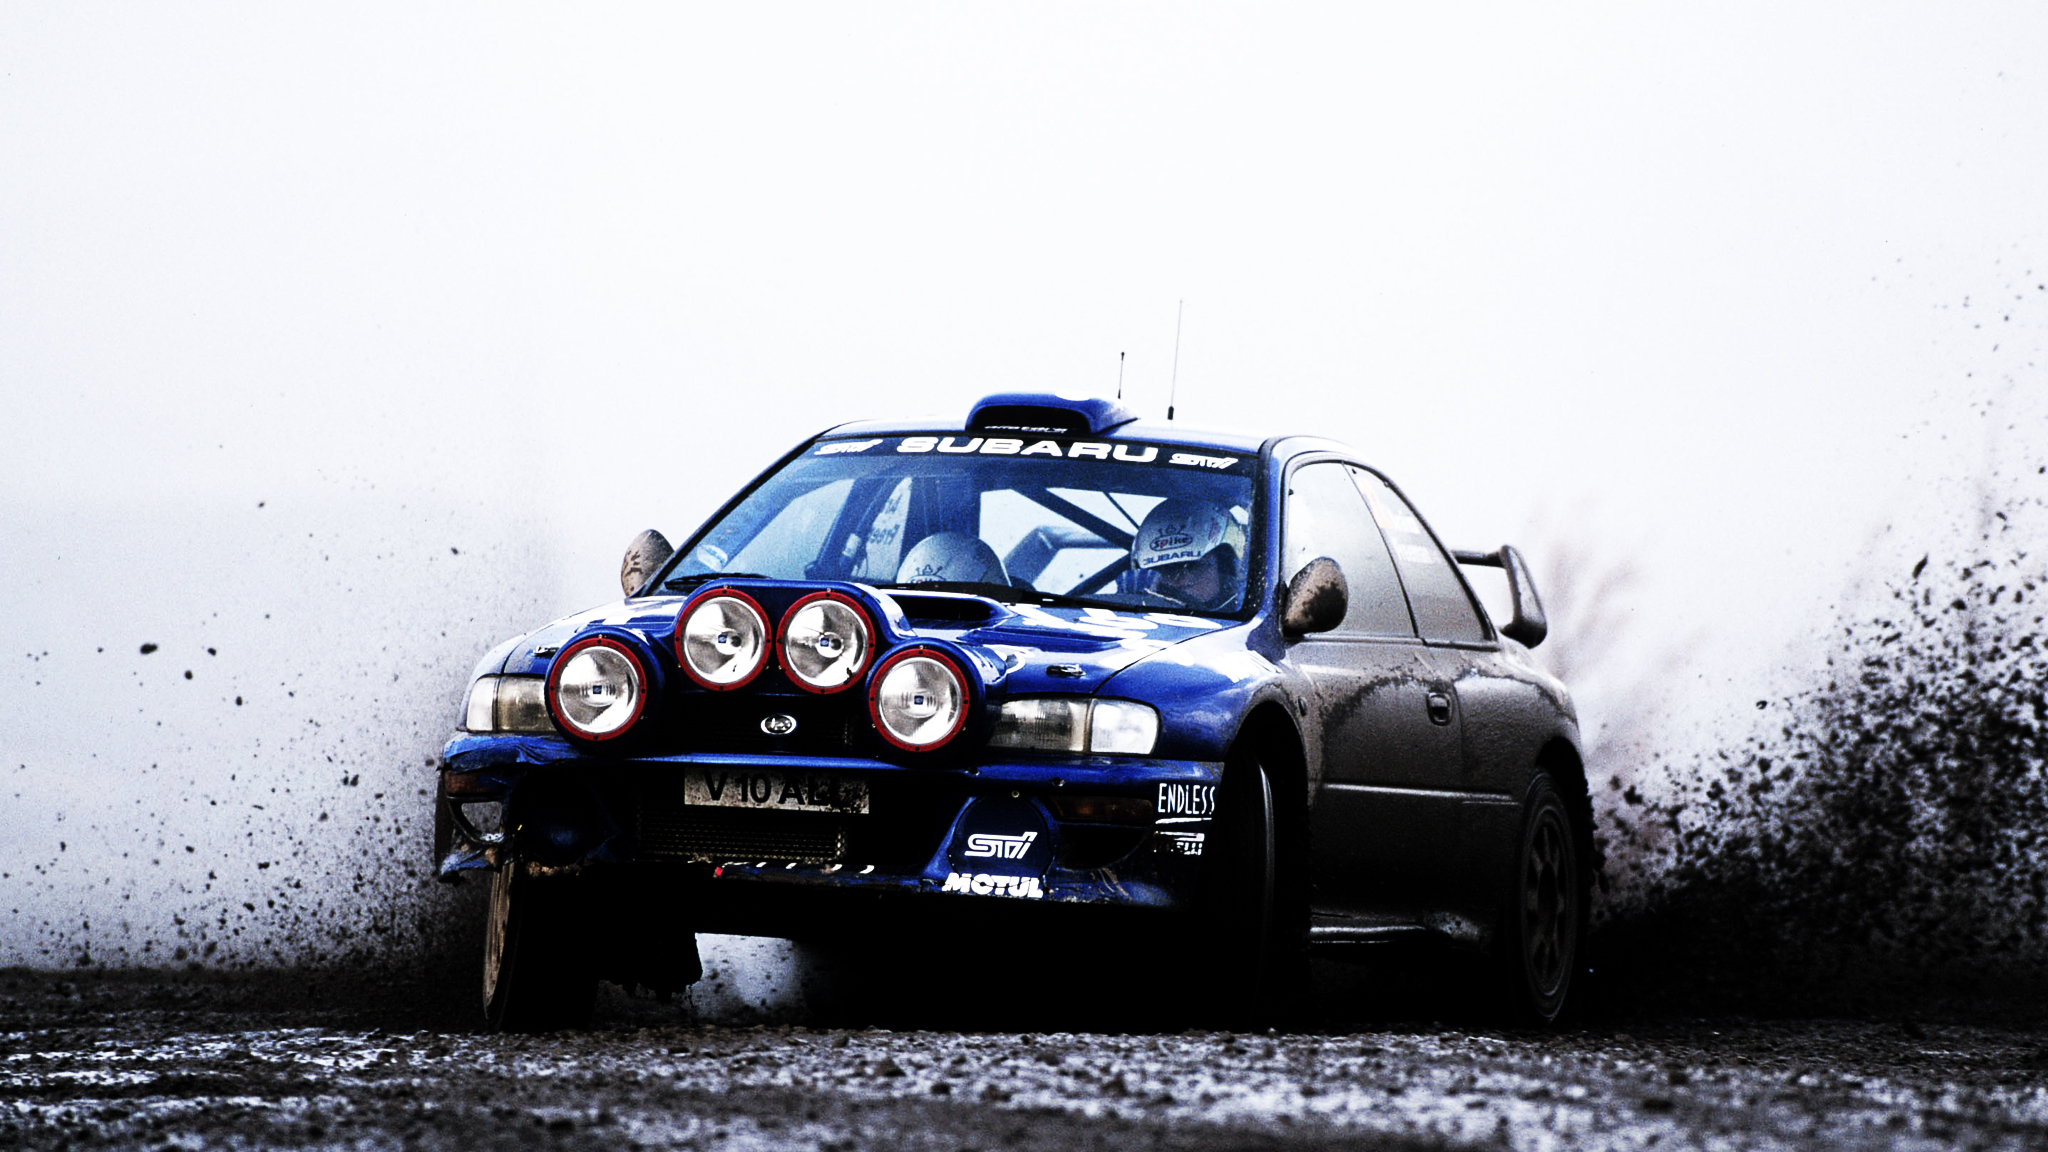 General 2048x1152 car Subaru rally cars Subaru Impreza vehicle race cars racing dirt blue cars sport